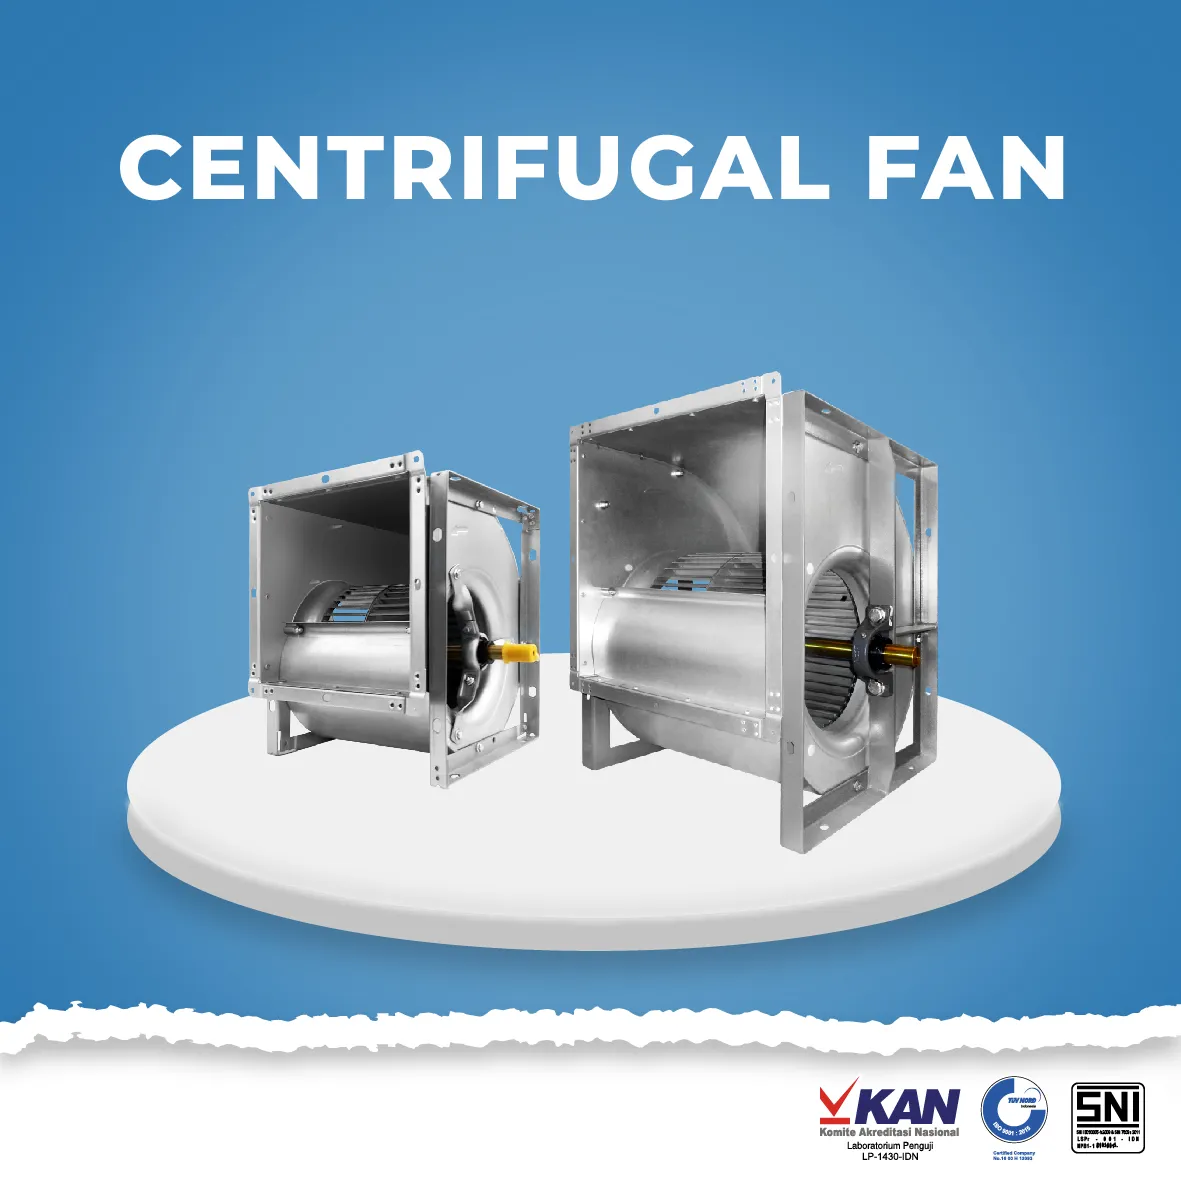  Centrifugal Fan centrifugal fan fan wheel kipas sirocco heavy duty 01